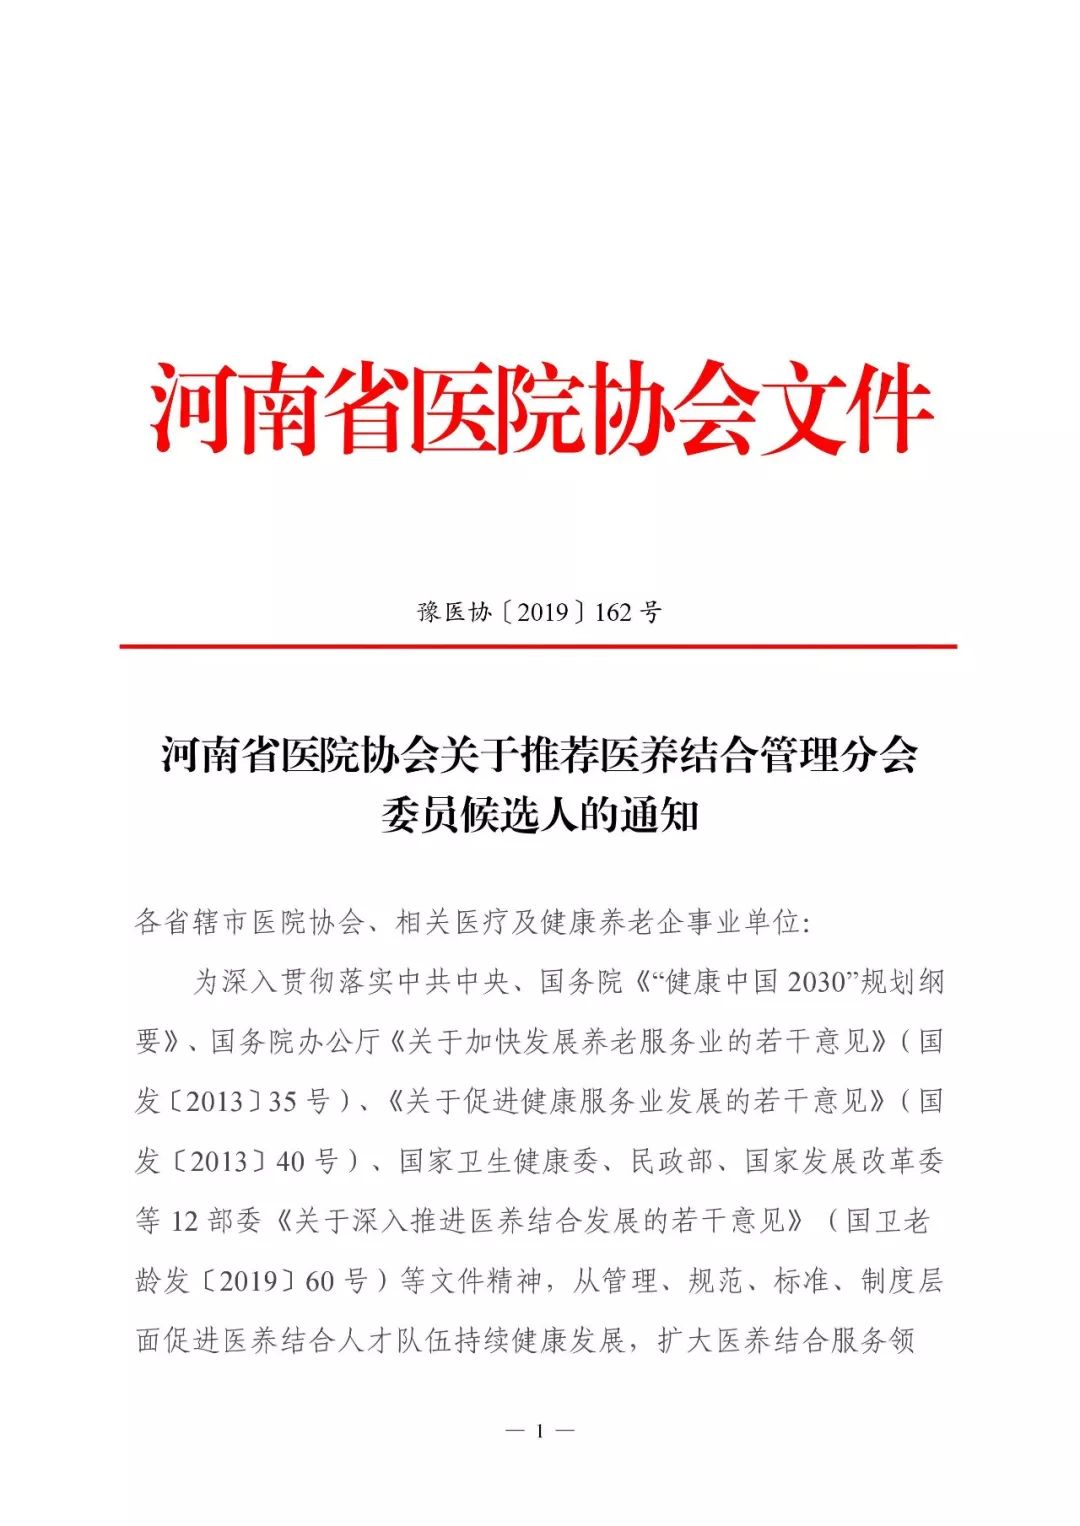 _河南省医院协会关于推荐医养结合管理分会委员候选人的通知